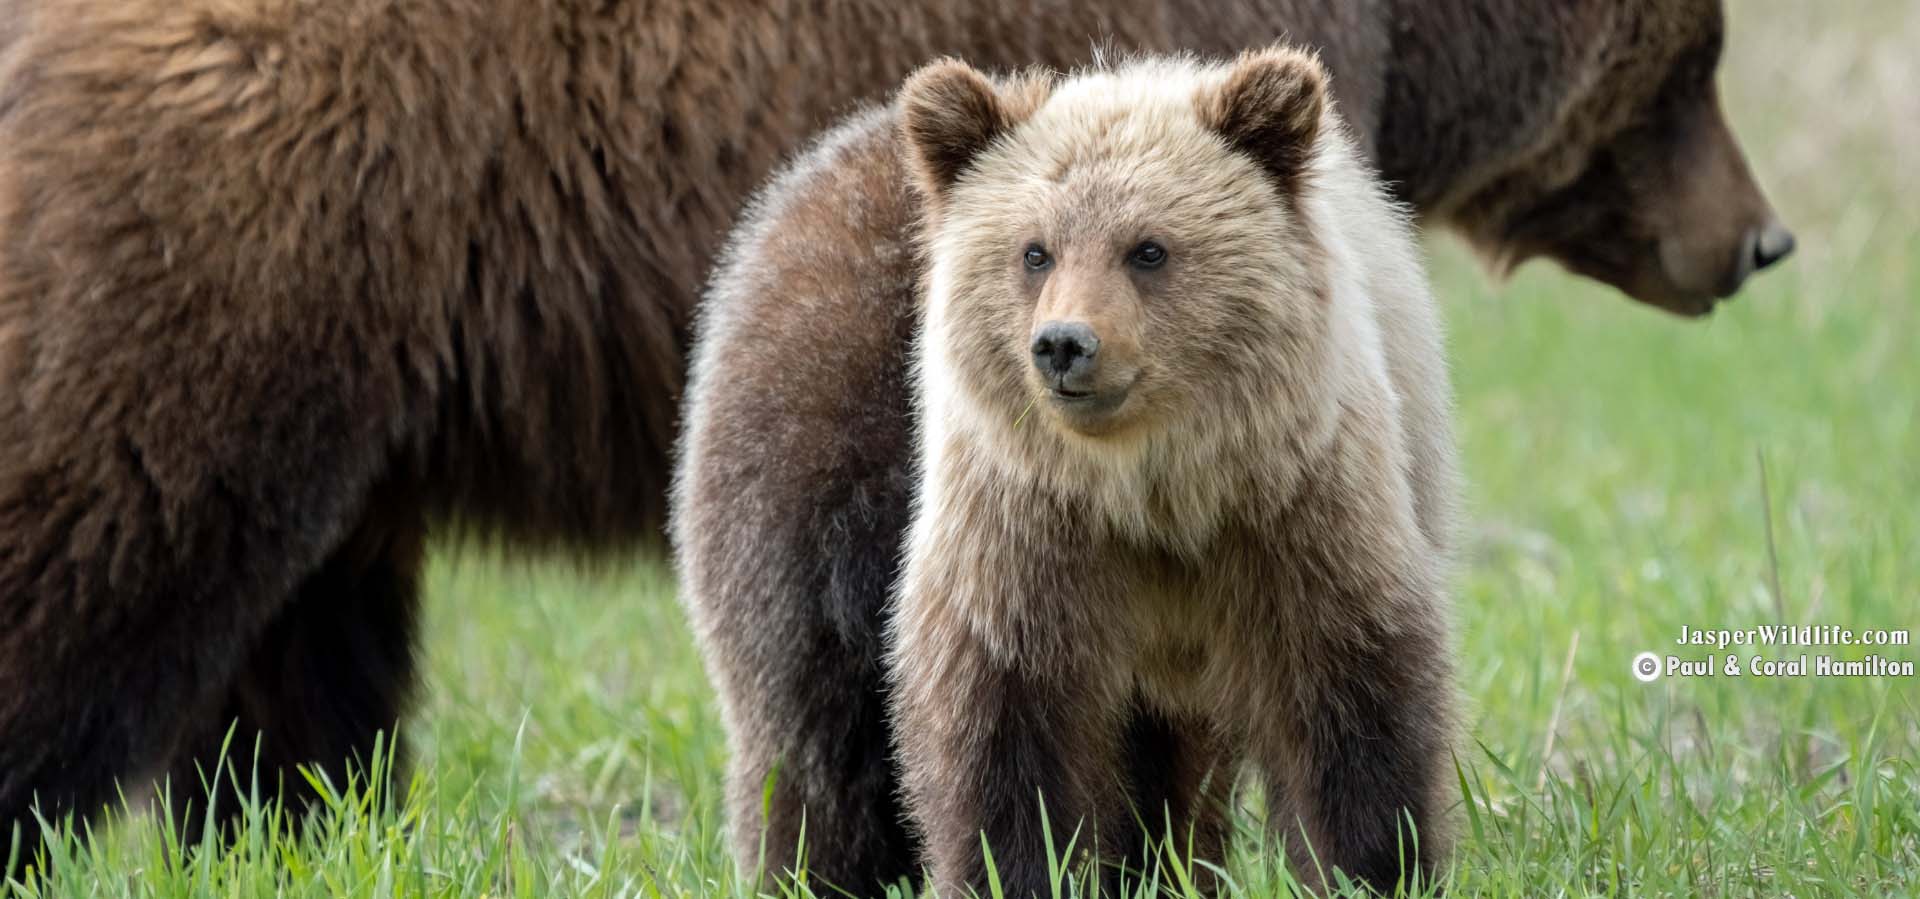 Jasper Wildlife Tours - Grizzly Bears